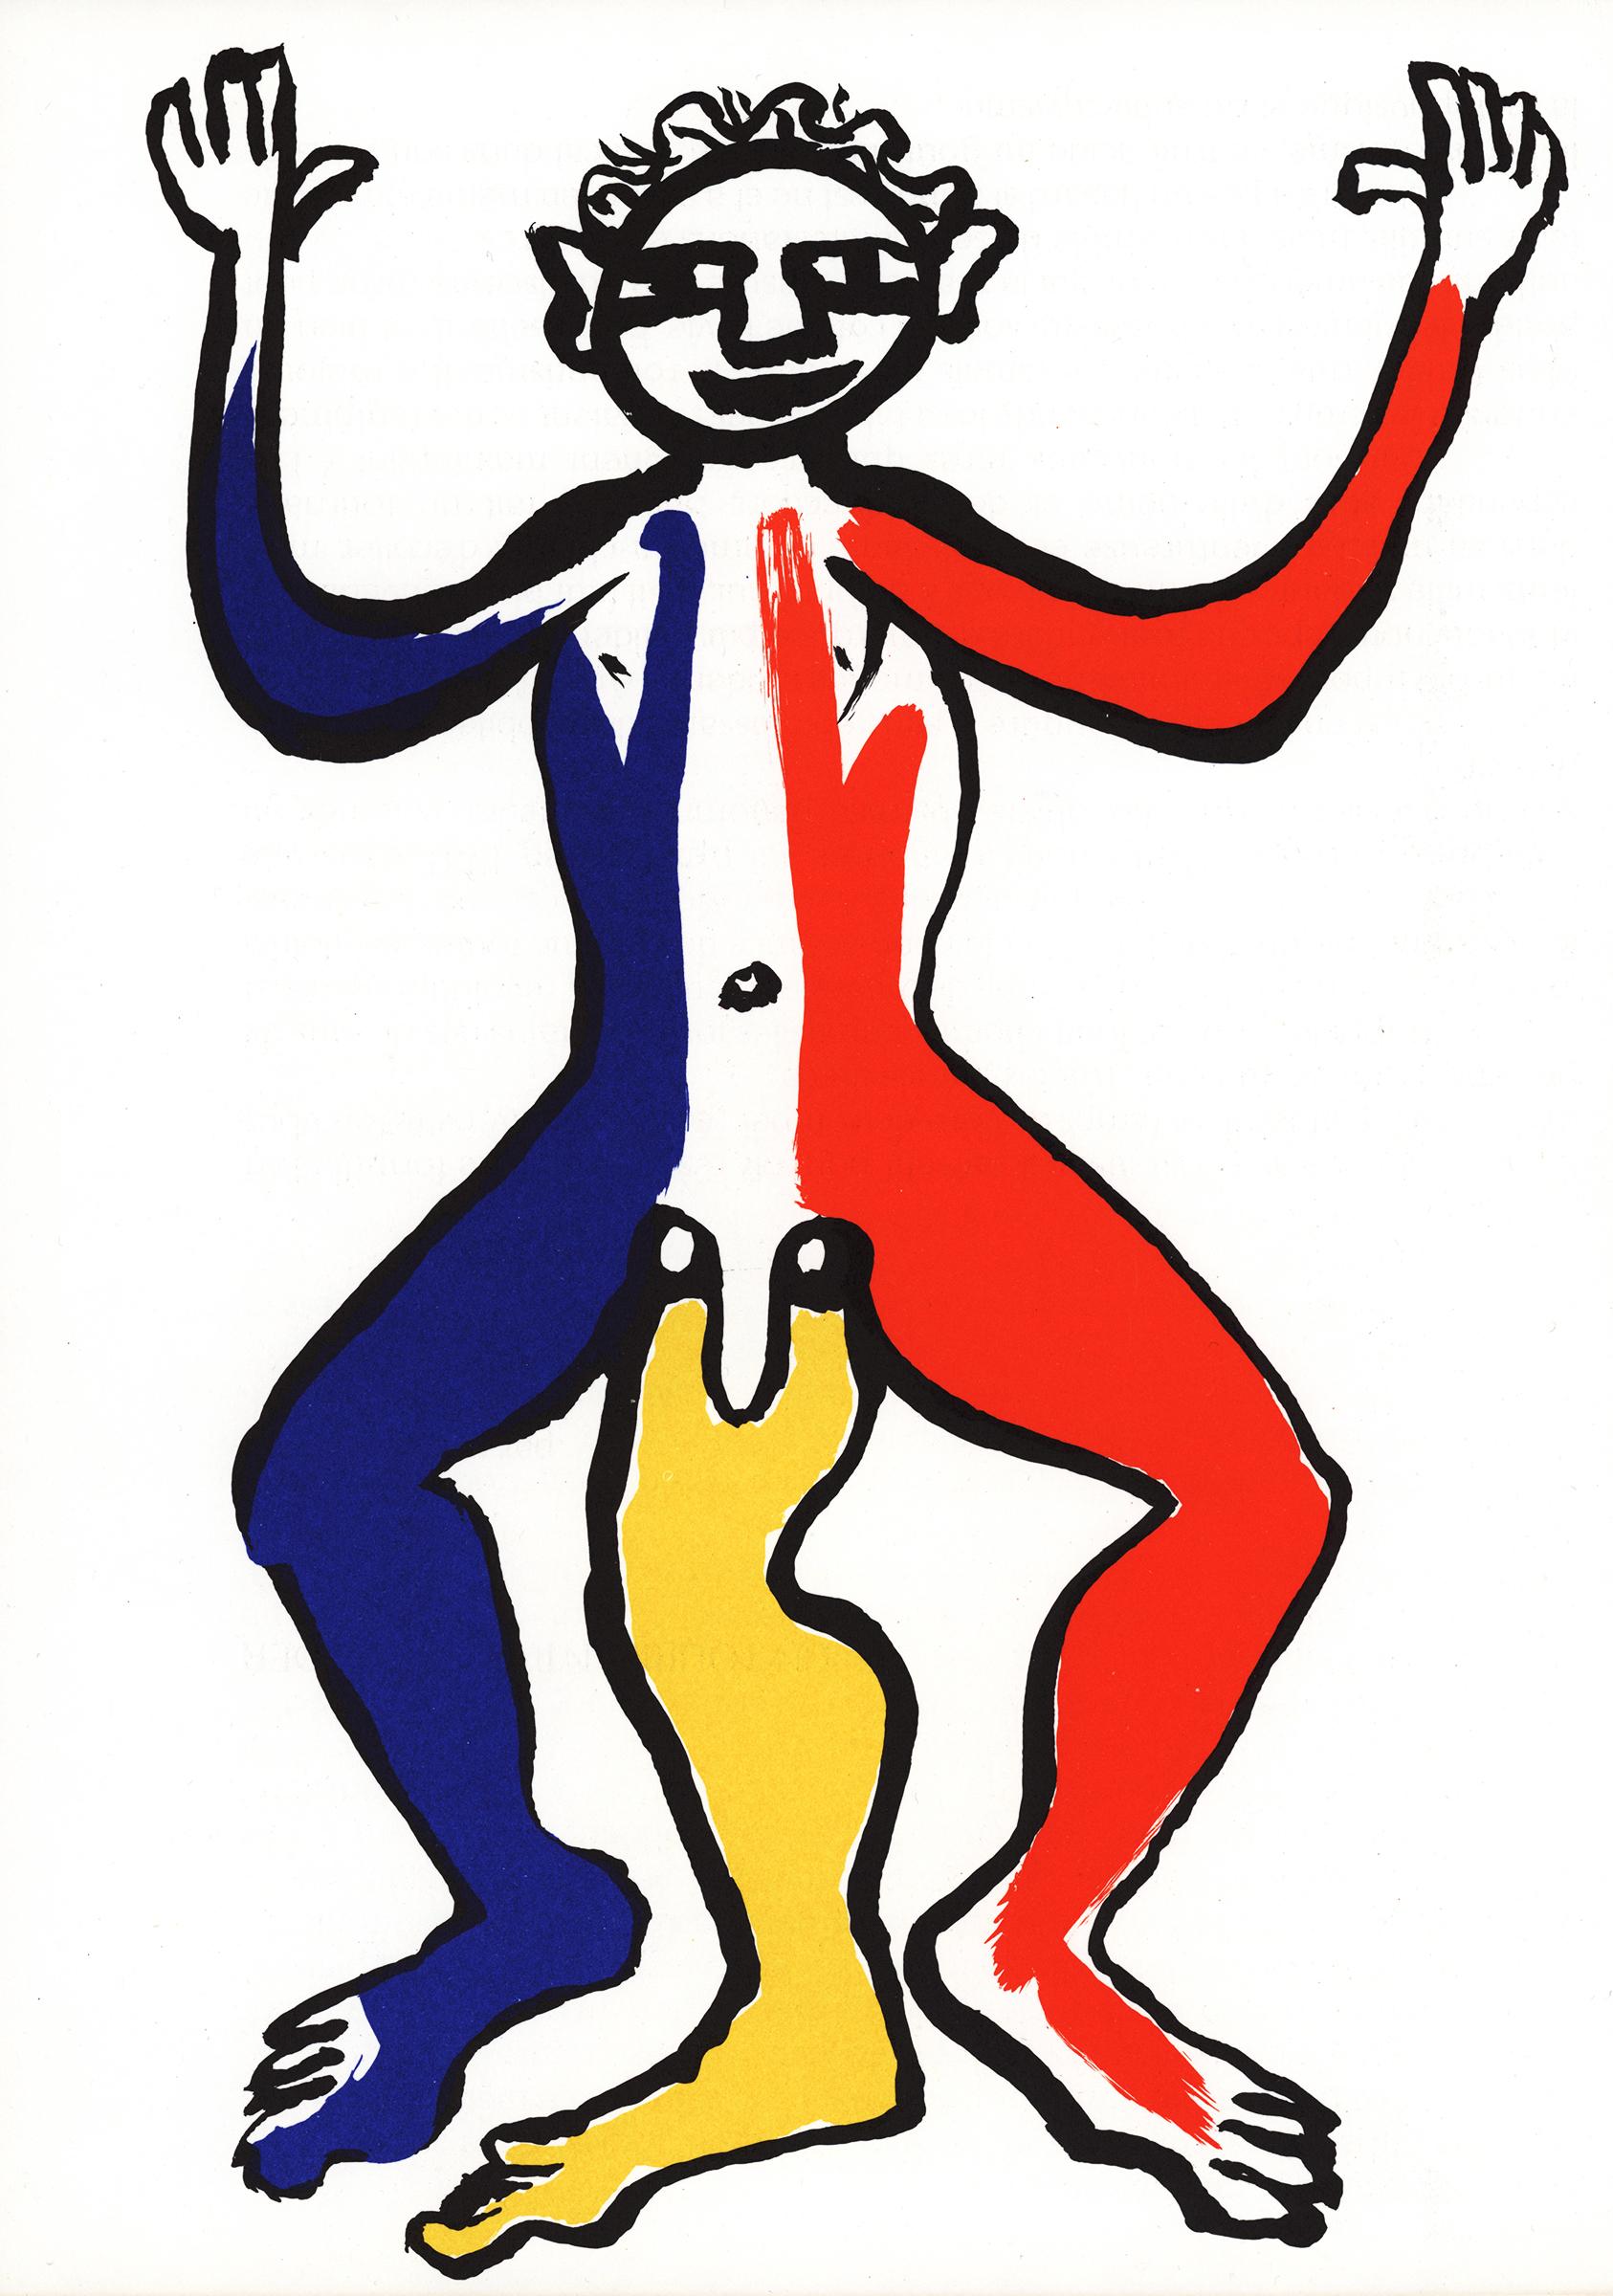 Original-Lithographie von Alexander Calder aus den 1970er Jahren: 

11x15 Zoll.
Insgesamt sehr guter Vintage-Zustand. 
Unsigniert aus einer Auflage von unbekannt.
Veröffentlicht von: Galerie Maeght, Paris, 1975.
Portfolio: Derriere le